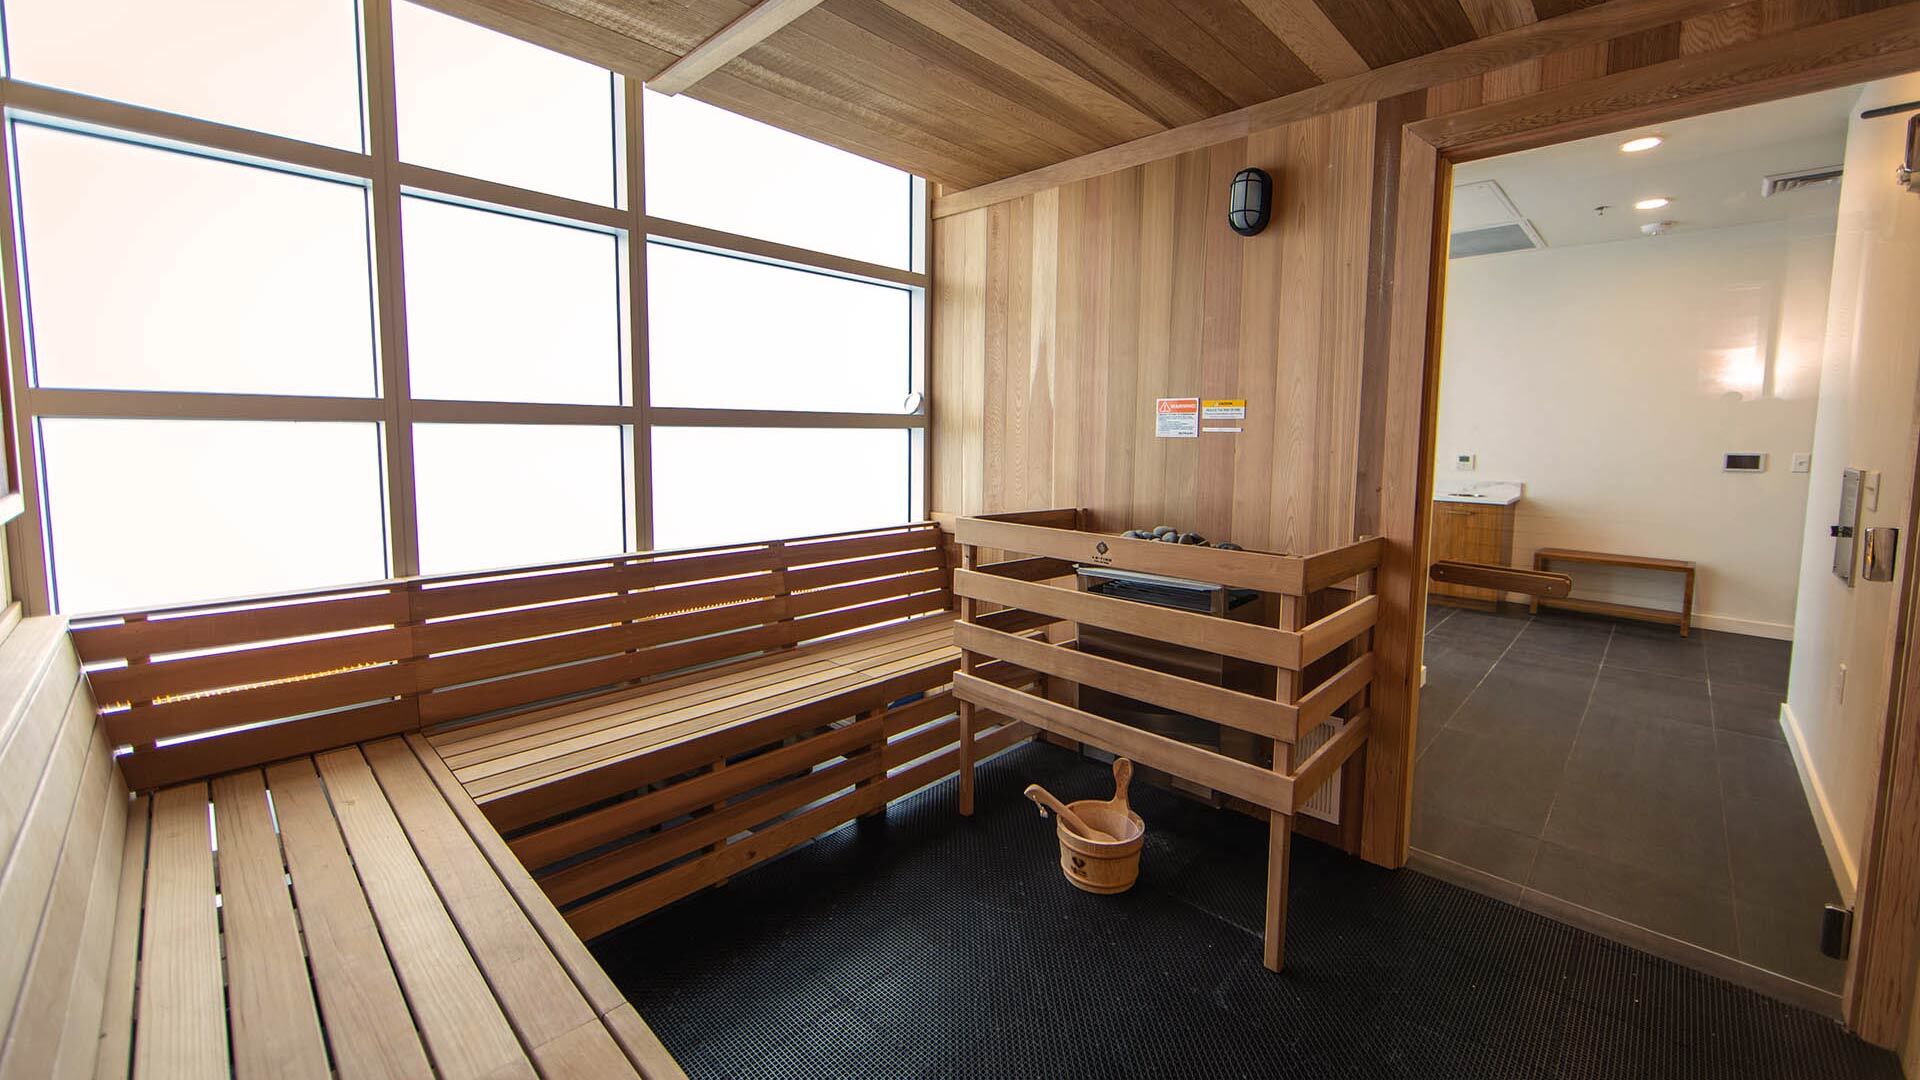 Goss amenities sauna room view 1